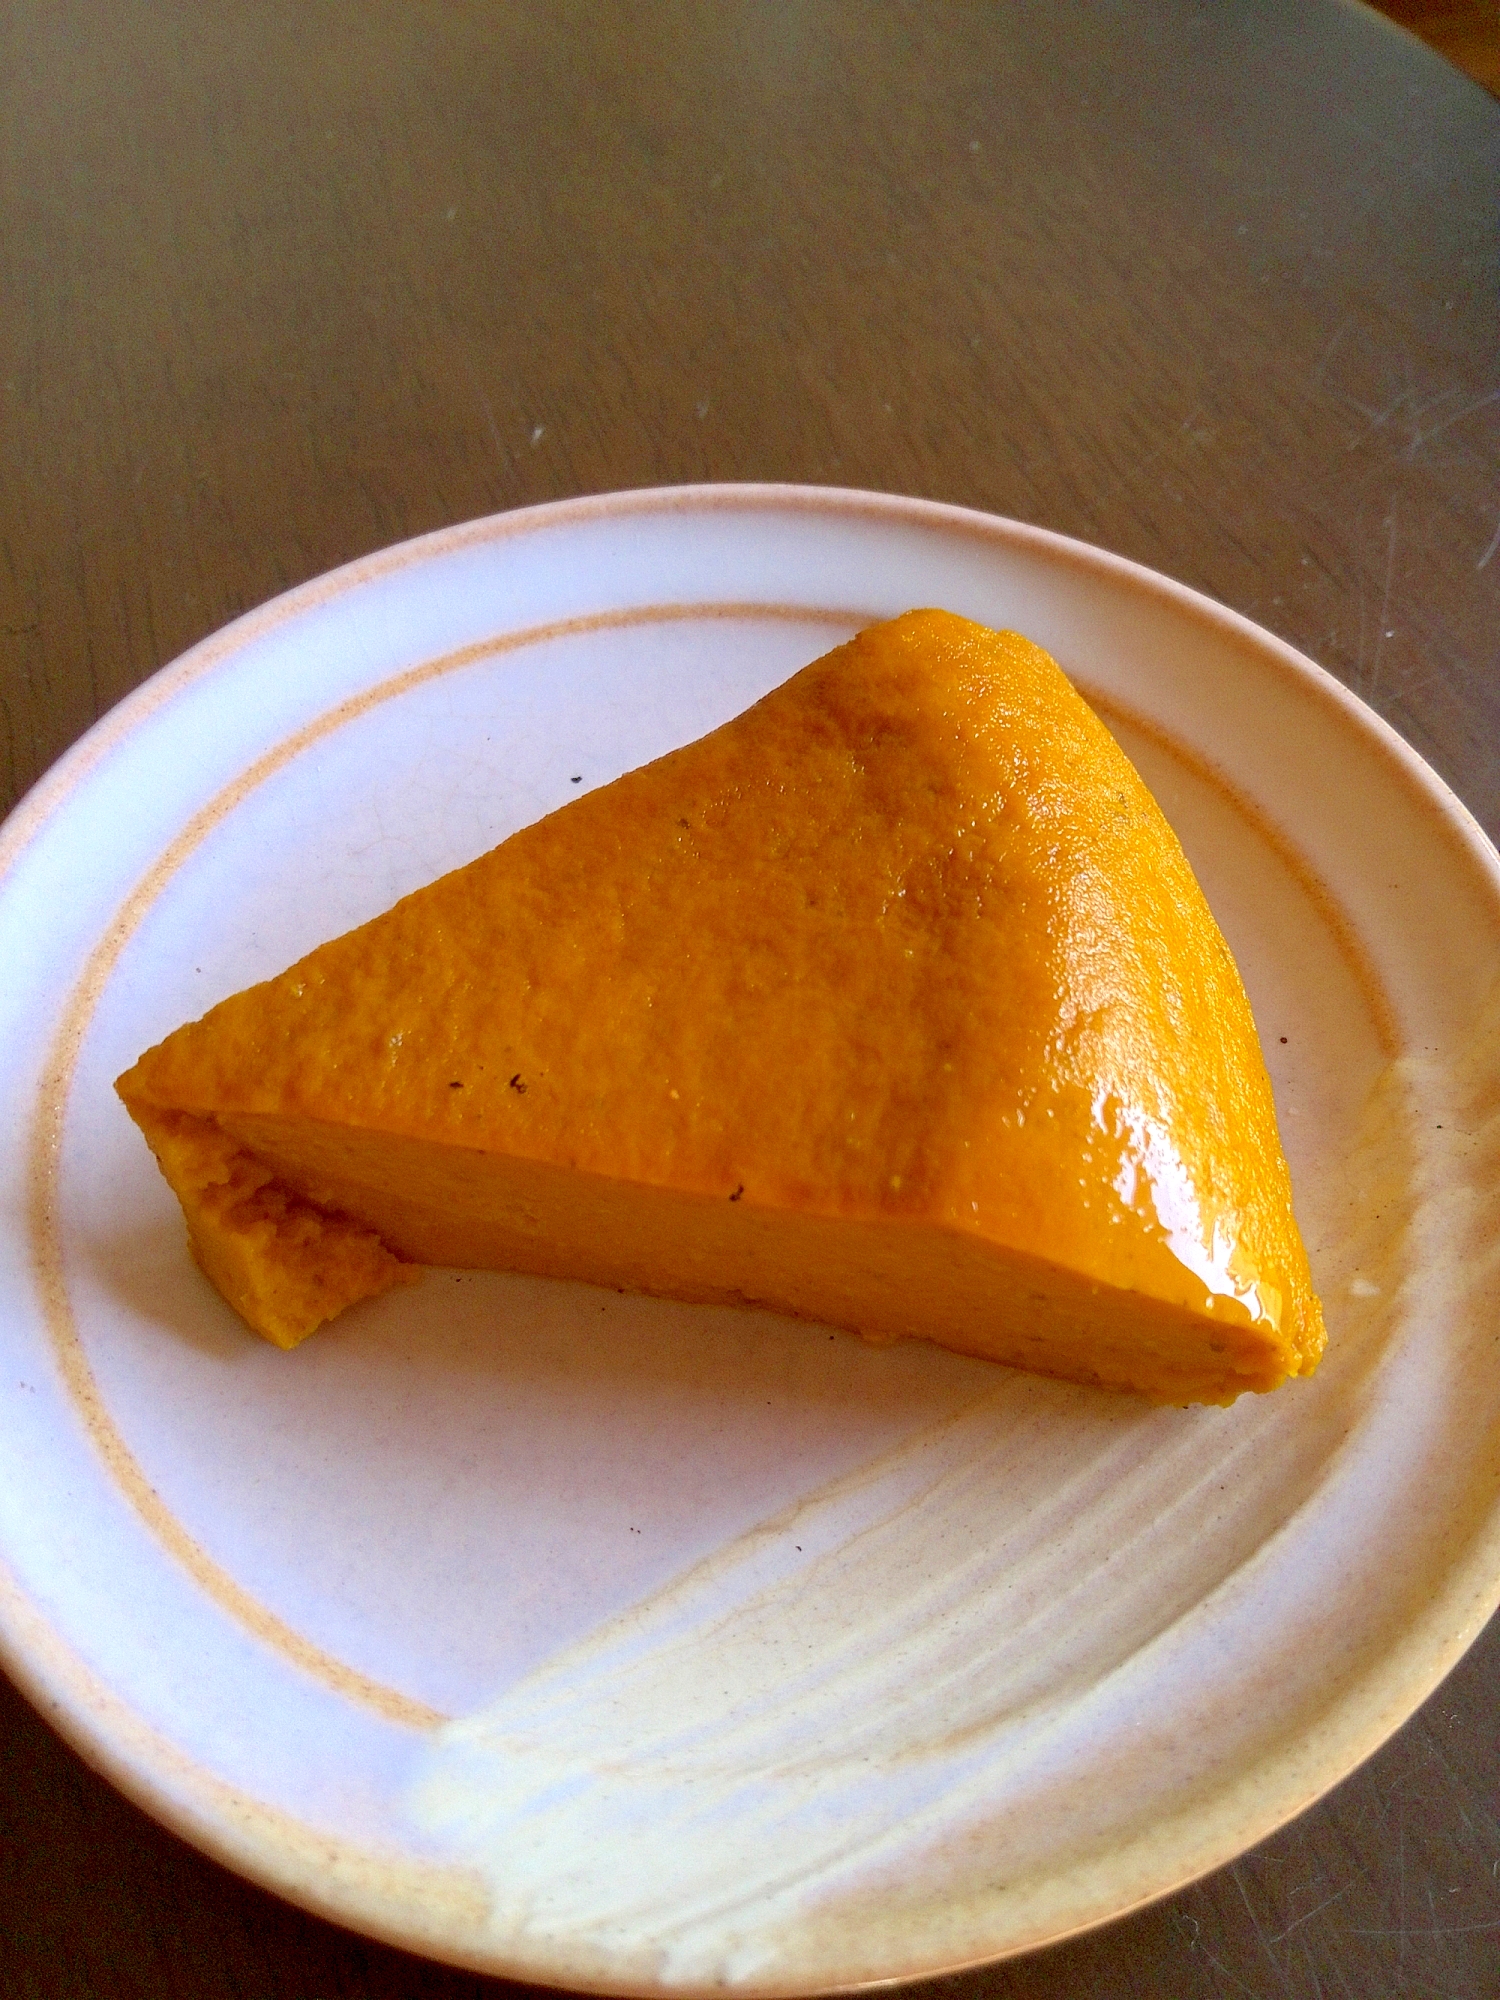 縁取りに黄色いラインの入った白い器にかぼちゃのプリンが一切れ盛られている。